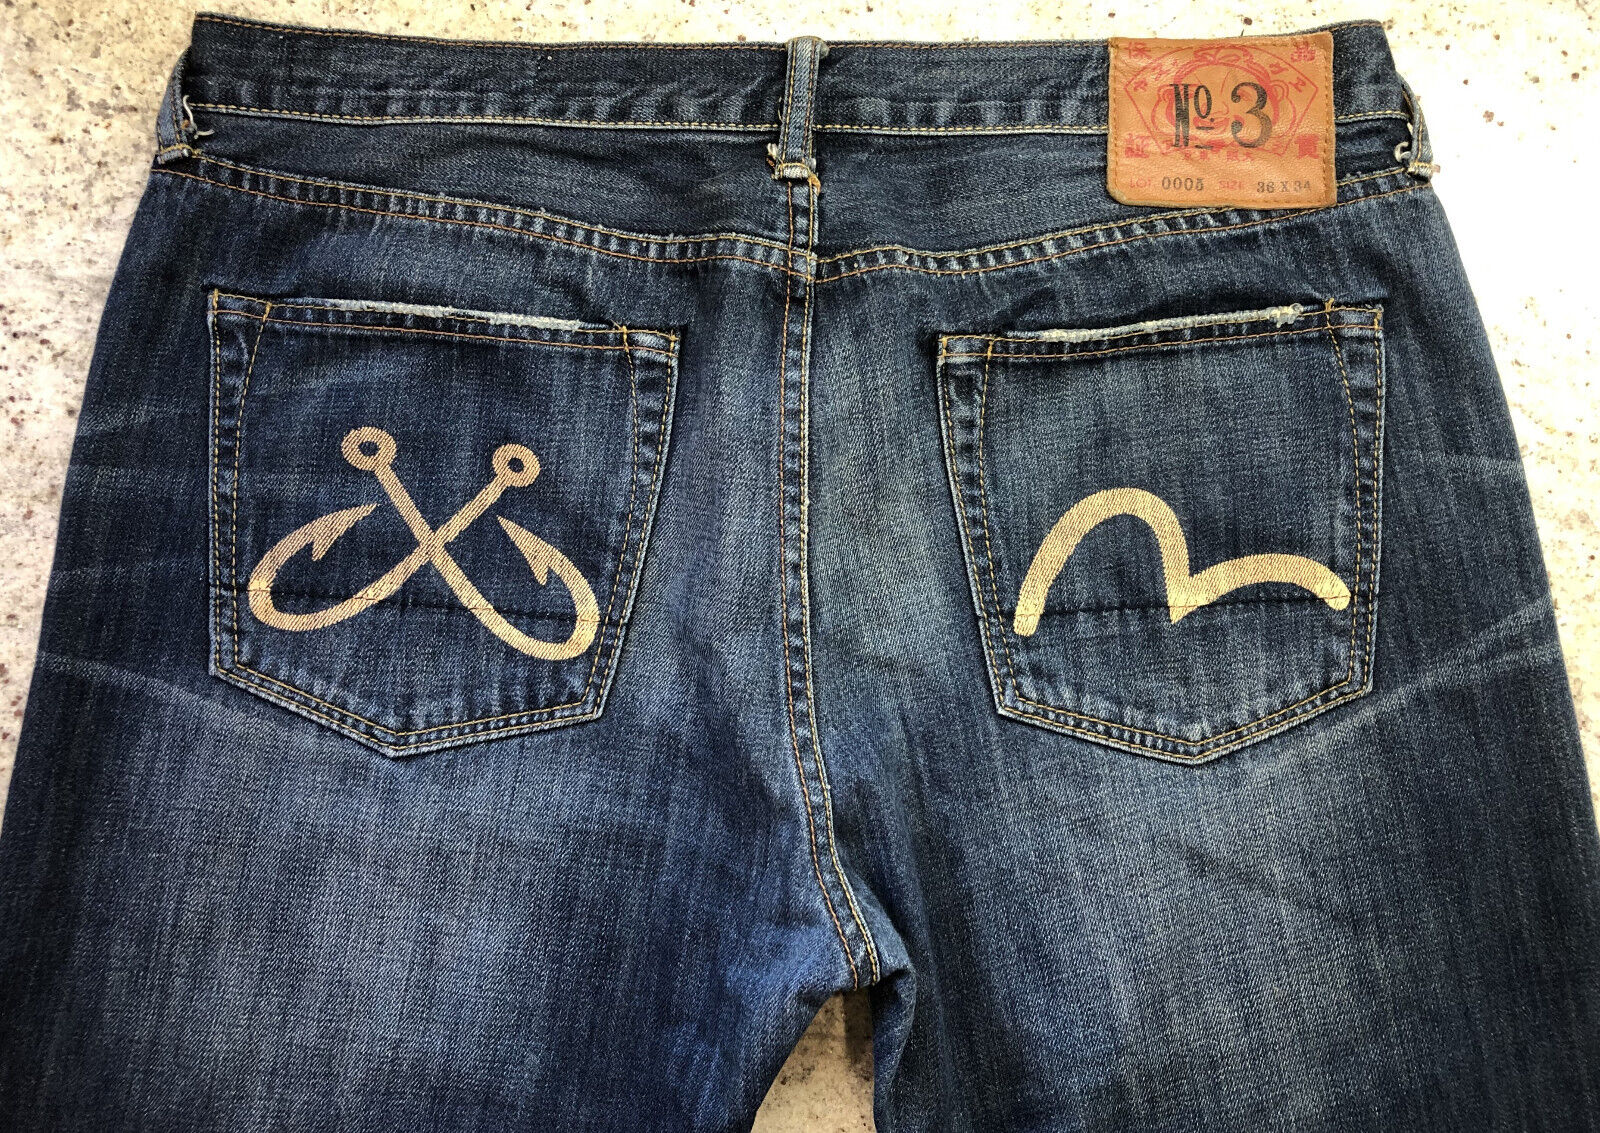 Evisu Jeans Japan No 3 Lot 0005 Size 36